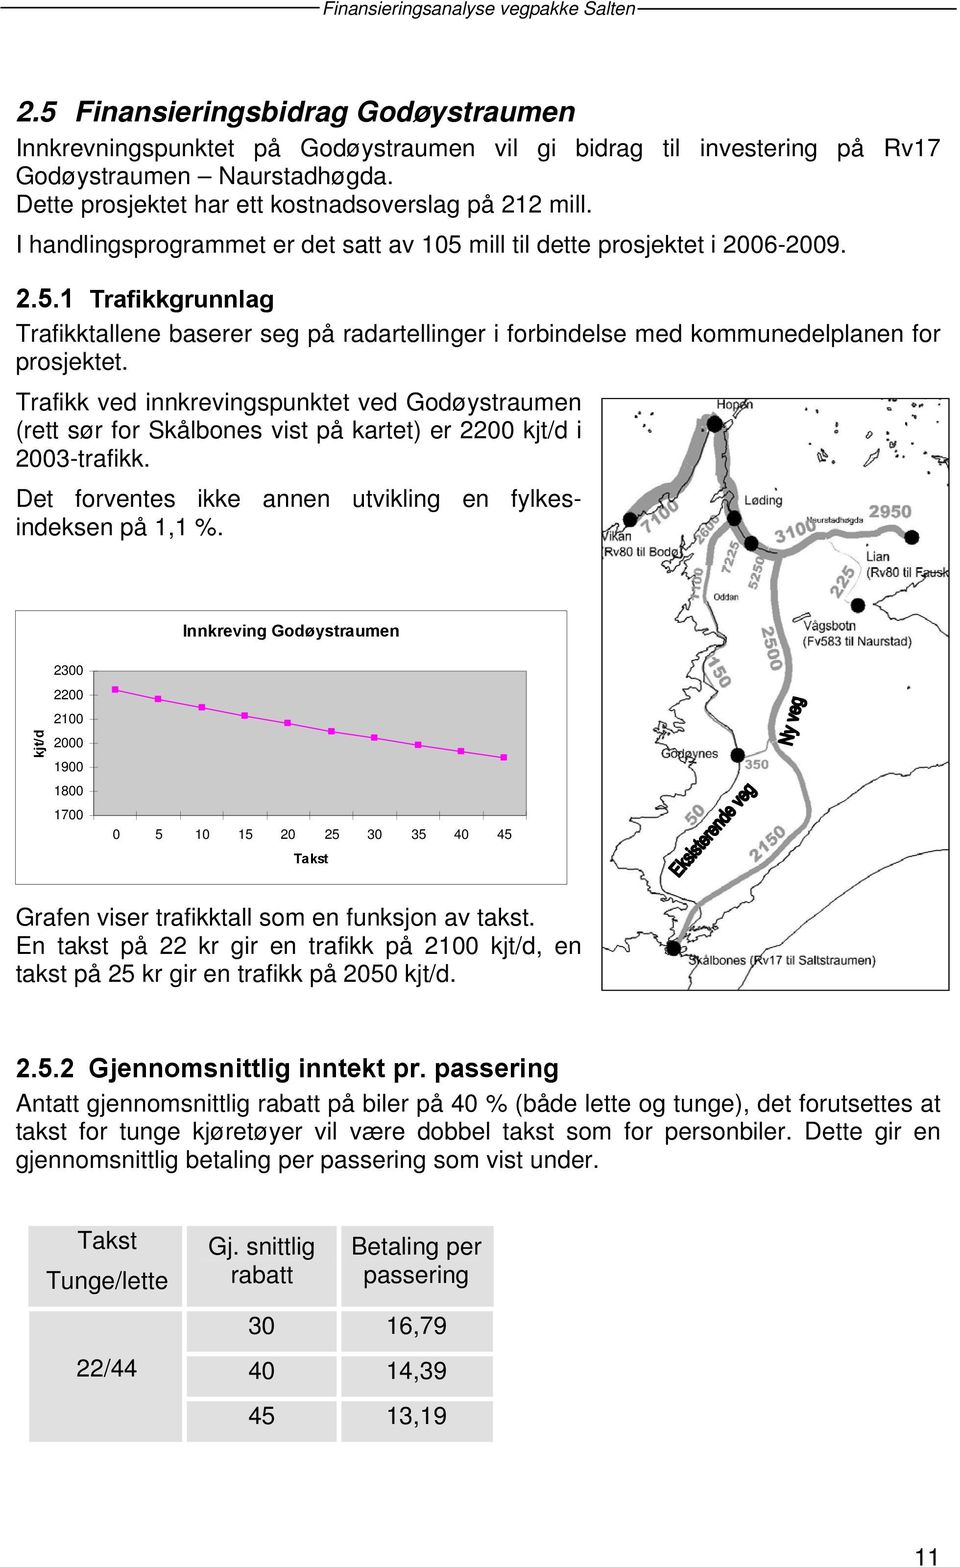 Trafikk ved innkrevingspunktet ved Godøystraumen (rett sør for Skålbones vist på kartet) er 2200 kjt/d i 2003-trafikk. Det forventes ikke annen utvikling en fylkesindeksen på 1,1 %.